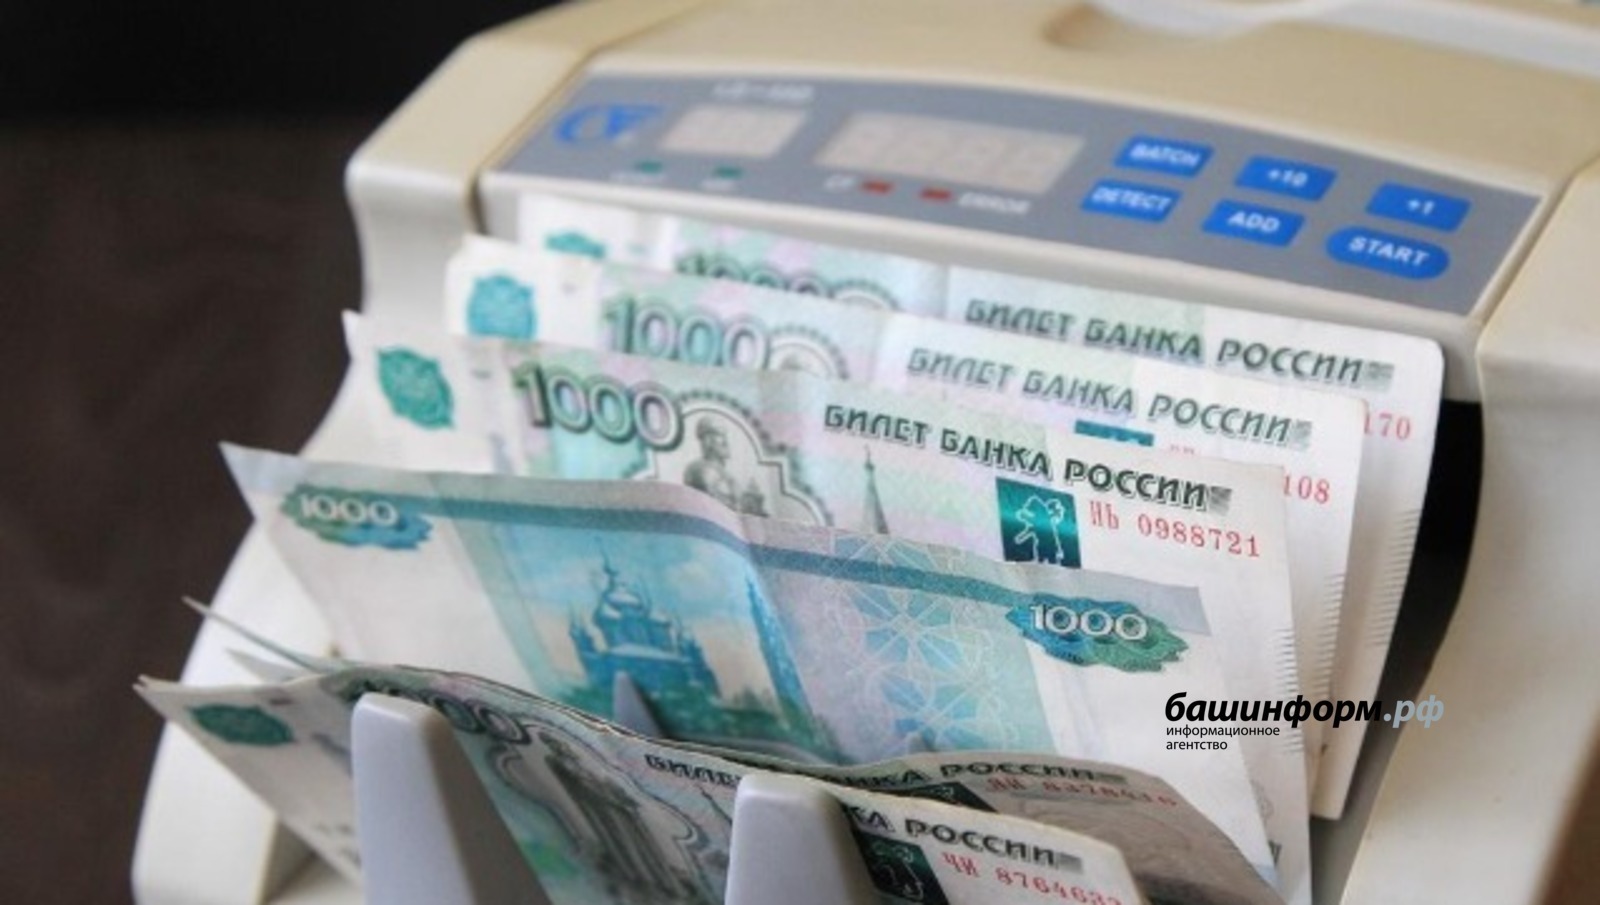 Глава Башкирии подписал закон о компенсациях учёбы в ссузах многодетным семьям